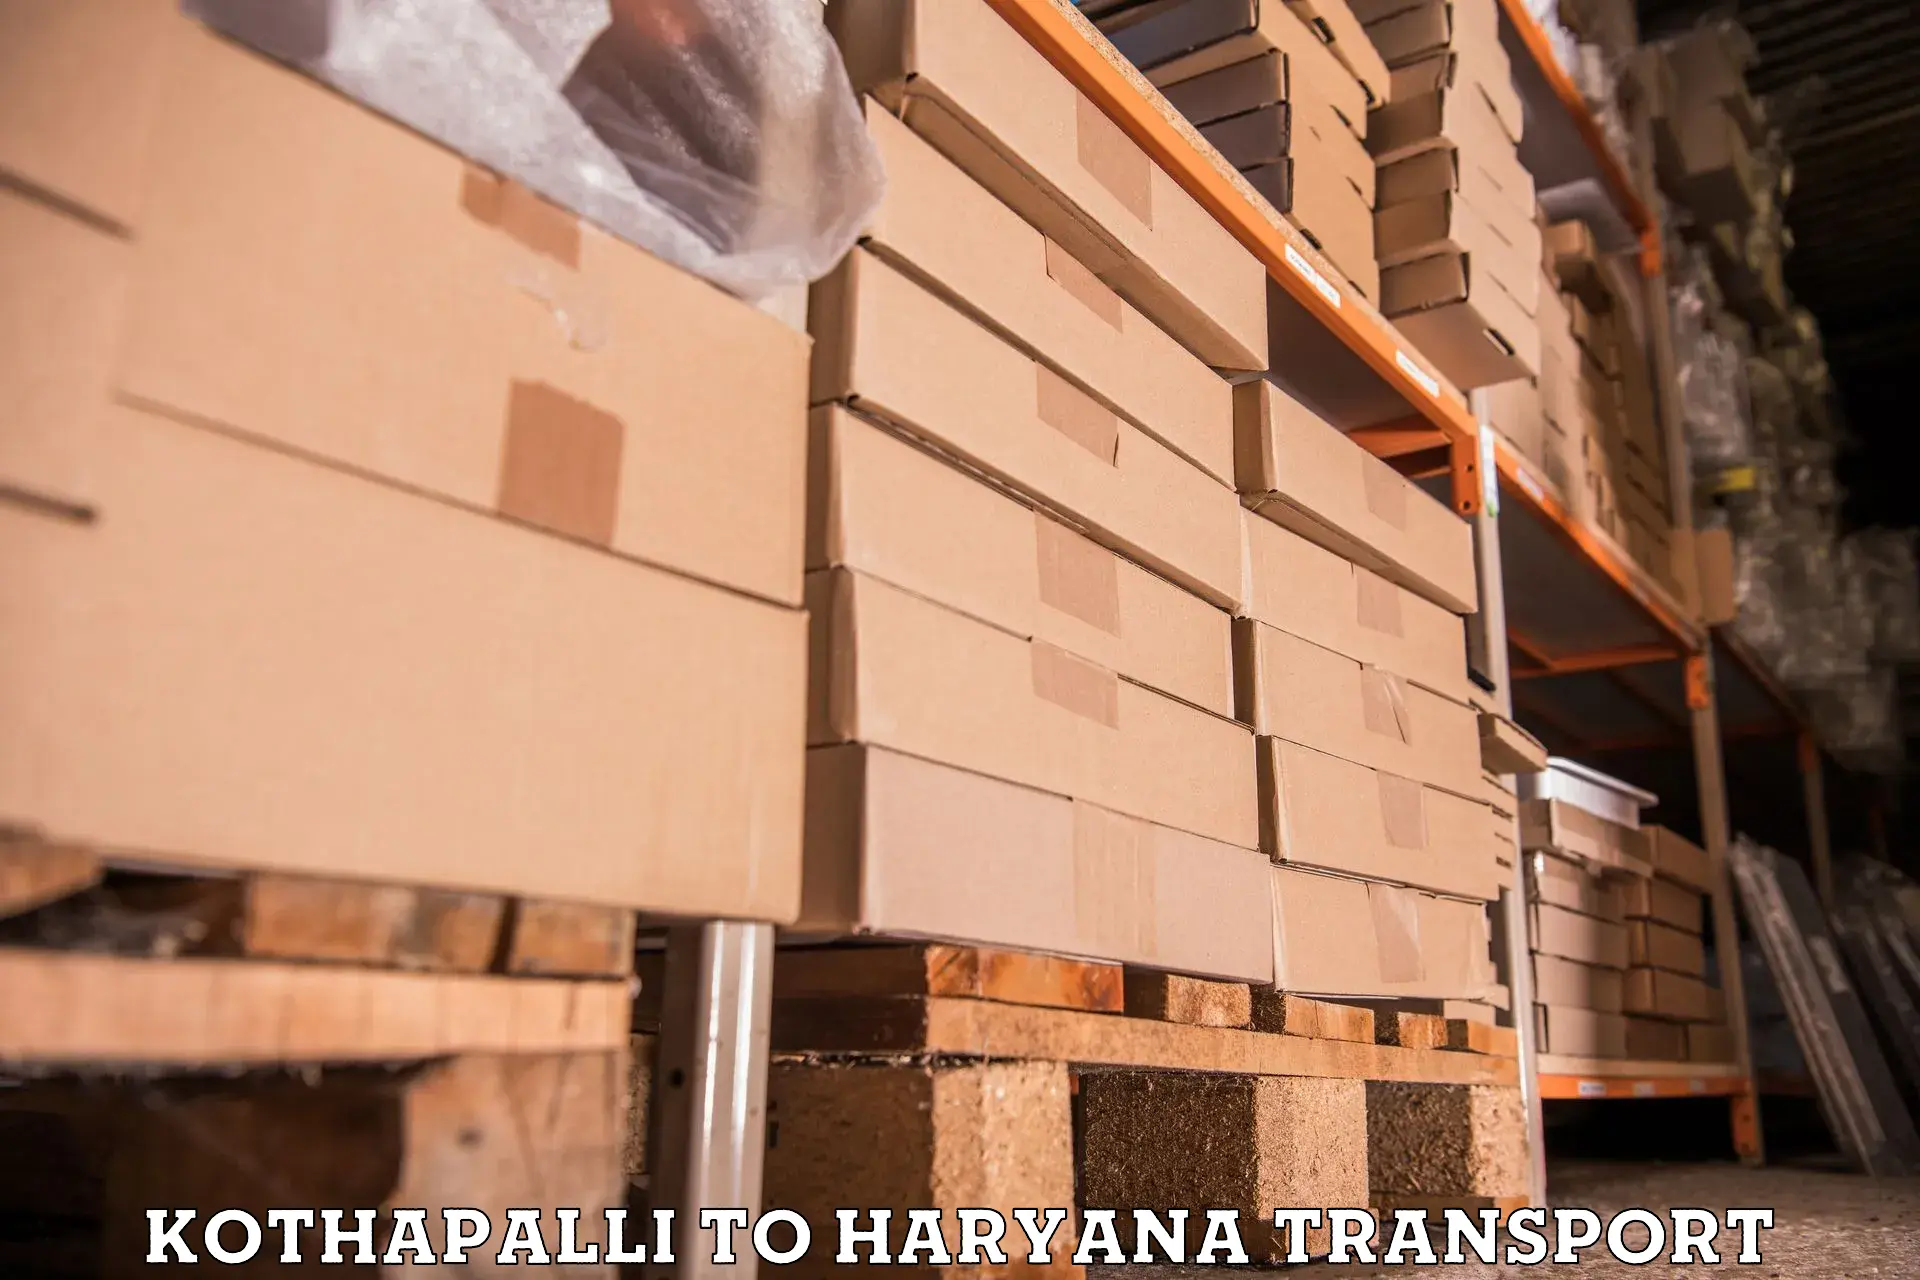 Parcel transport services Kothapalli to Julana